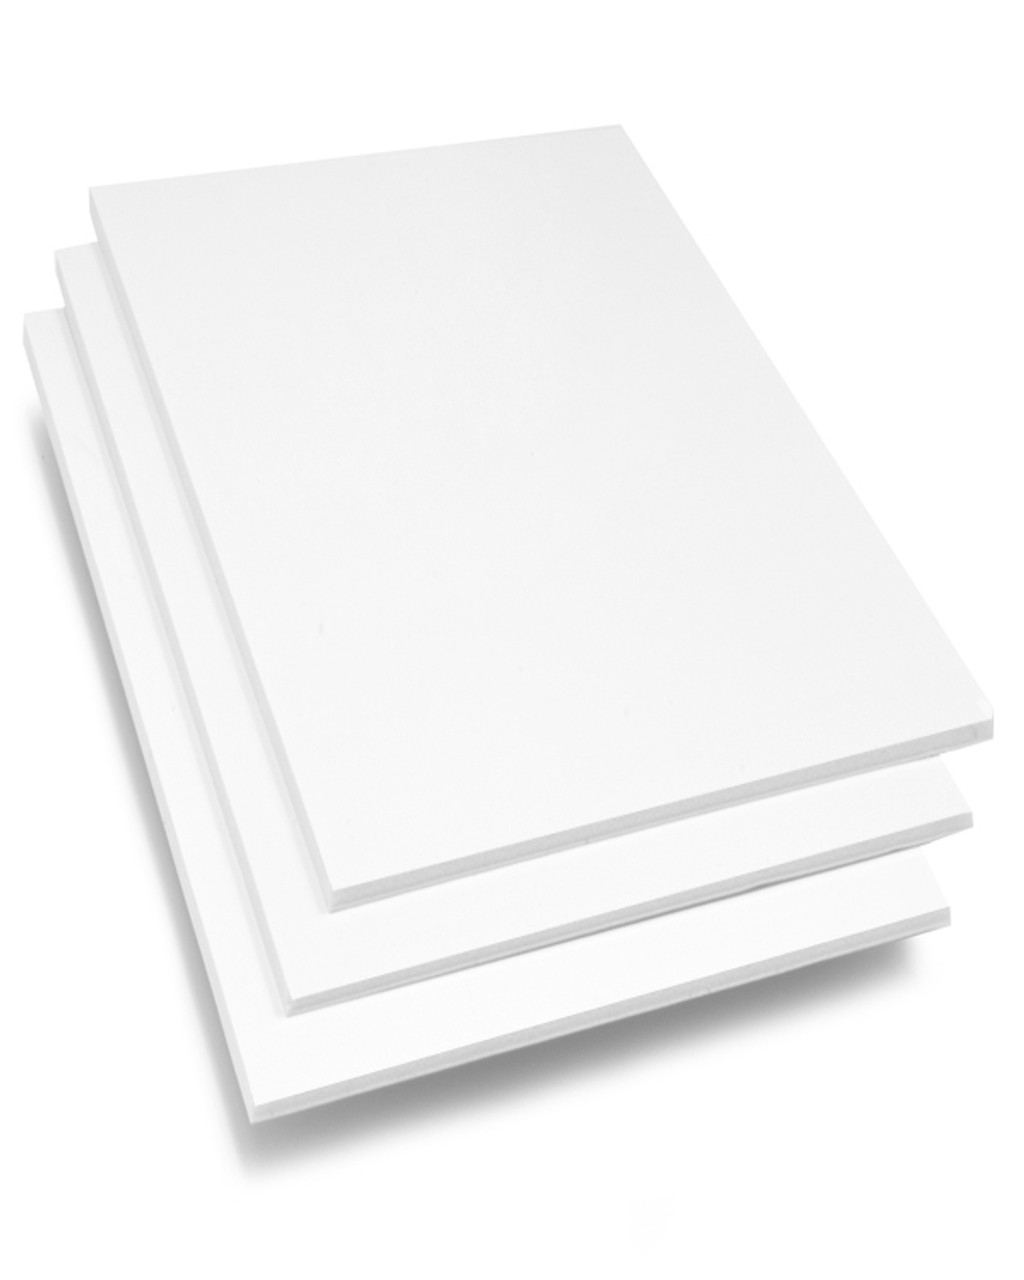 White 1/8" Foam Board .125"